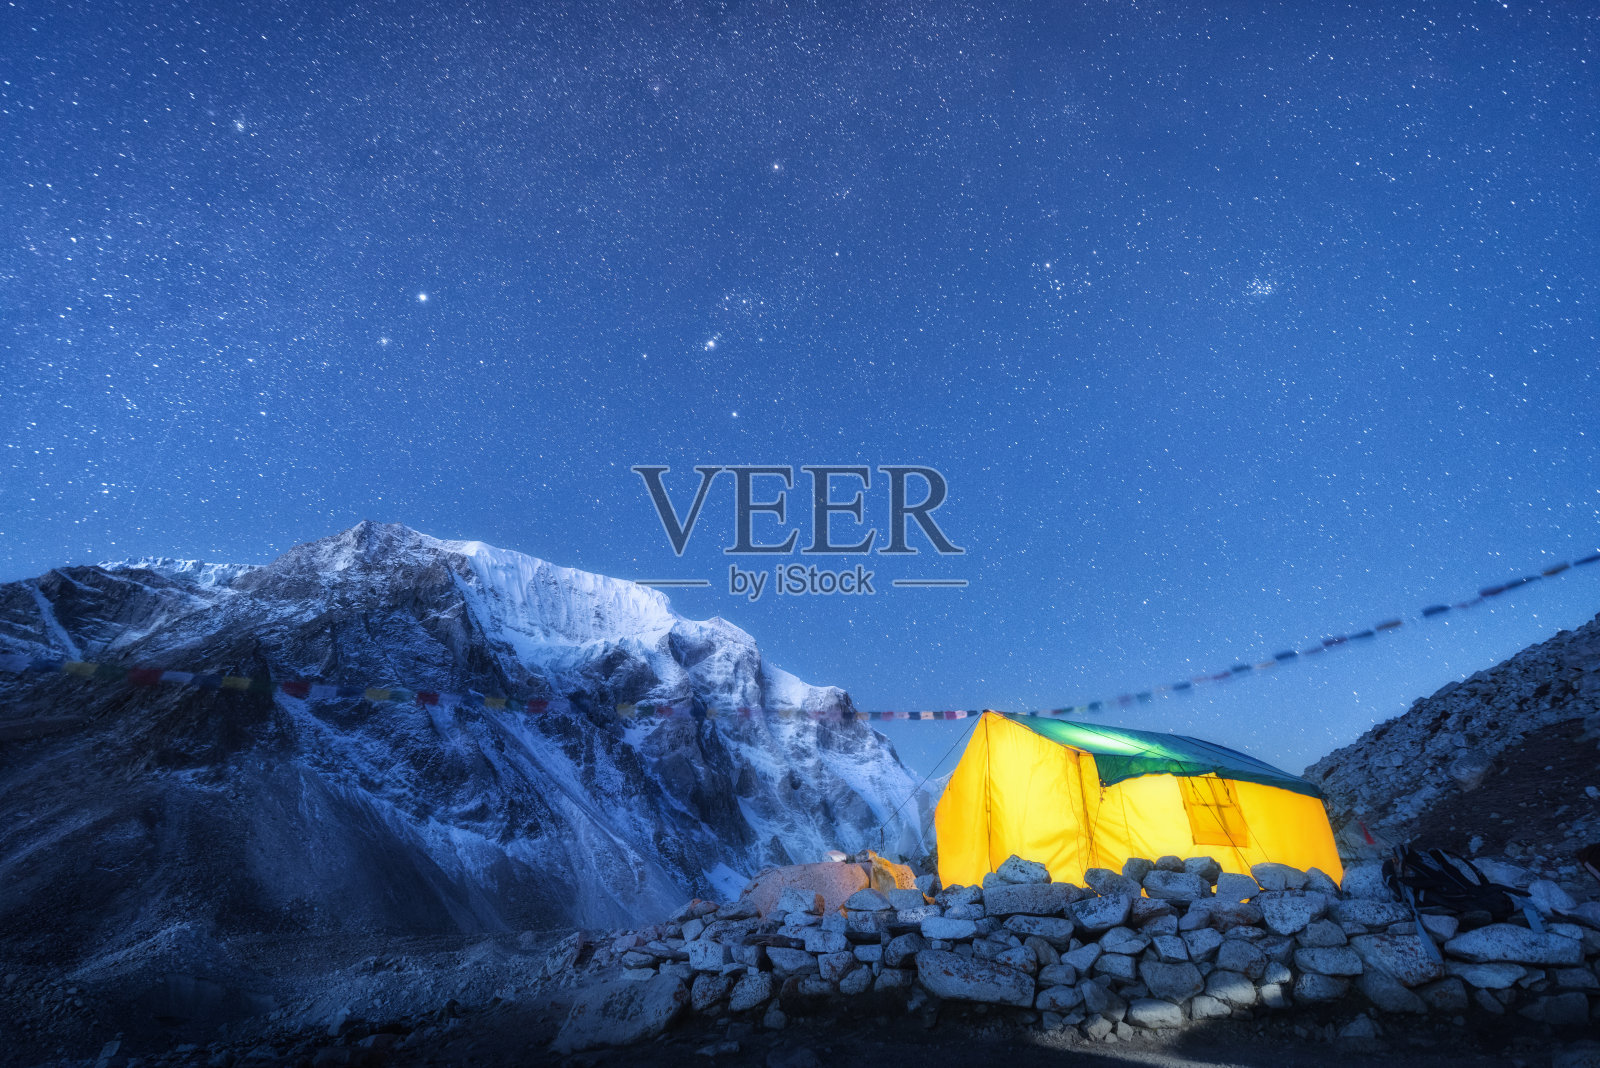 黄色的帐篷，映衬着高高的岩石和白雪皑皑的山峰，夜空中闪烁着星星。喜马拉雅山脉。山川、星空、宿营地。在喜马拉雅山脉徒步旅行。旅行照片摄影图片